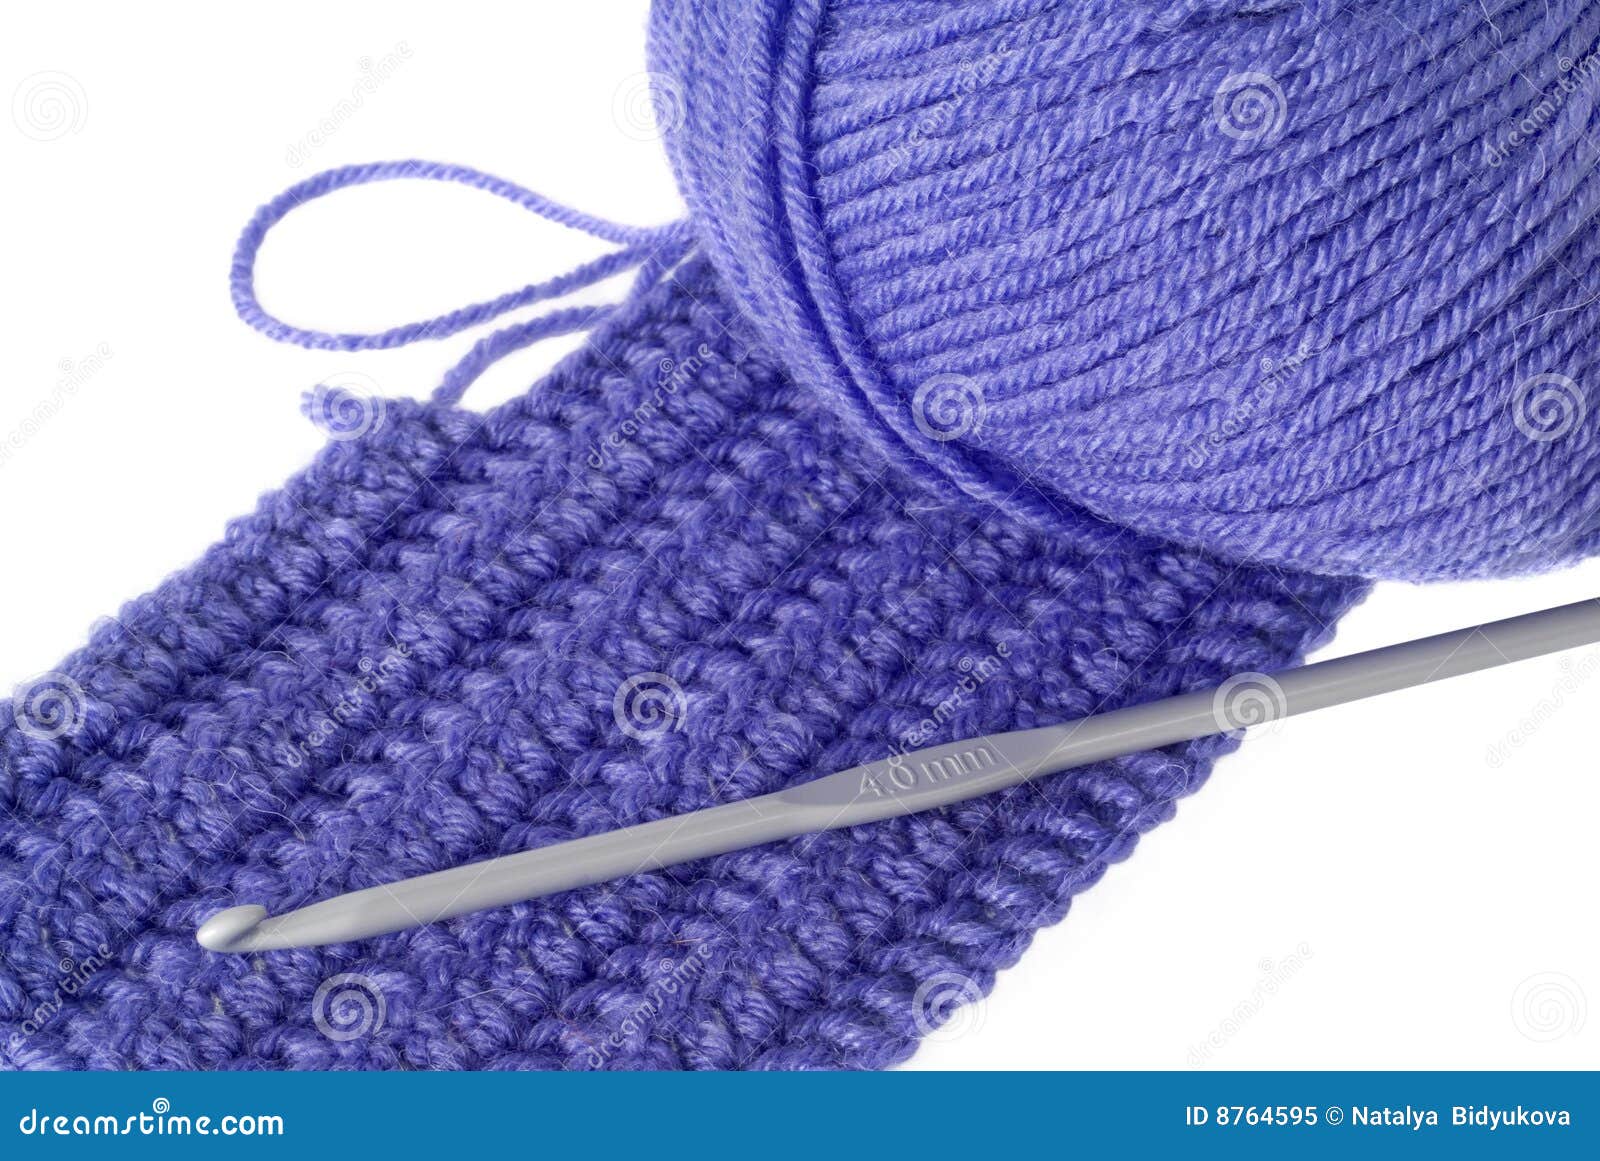 Needlework stock image. Image of isolation, needle, clothing - 8764595